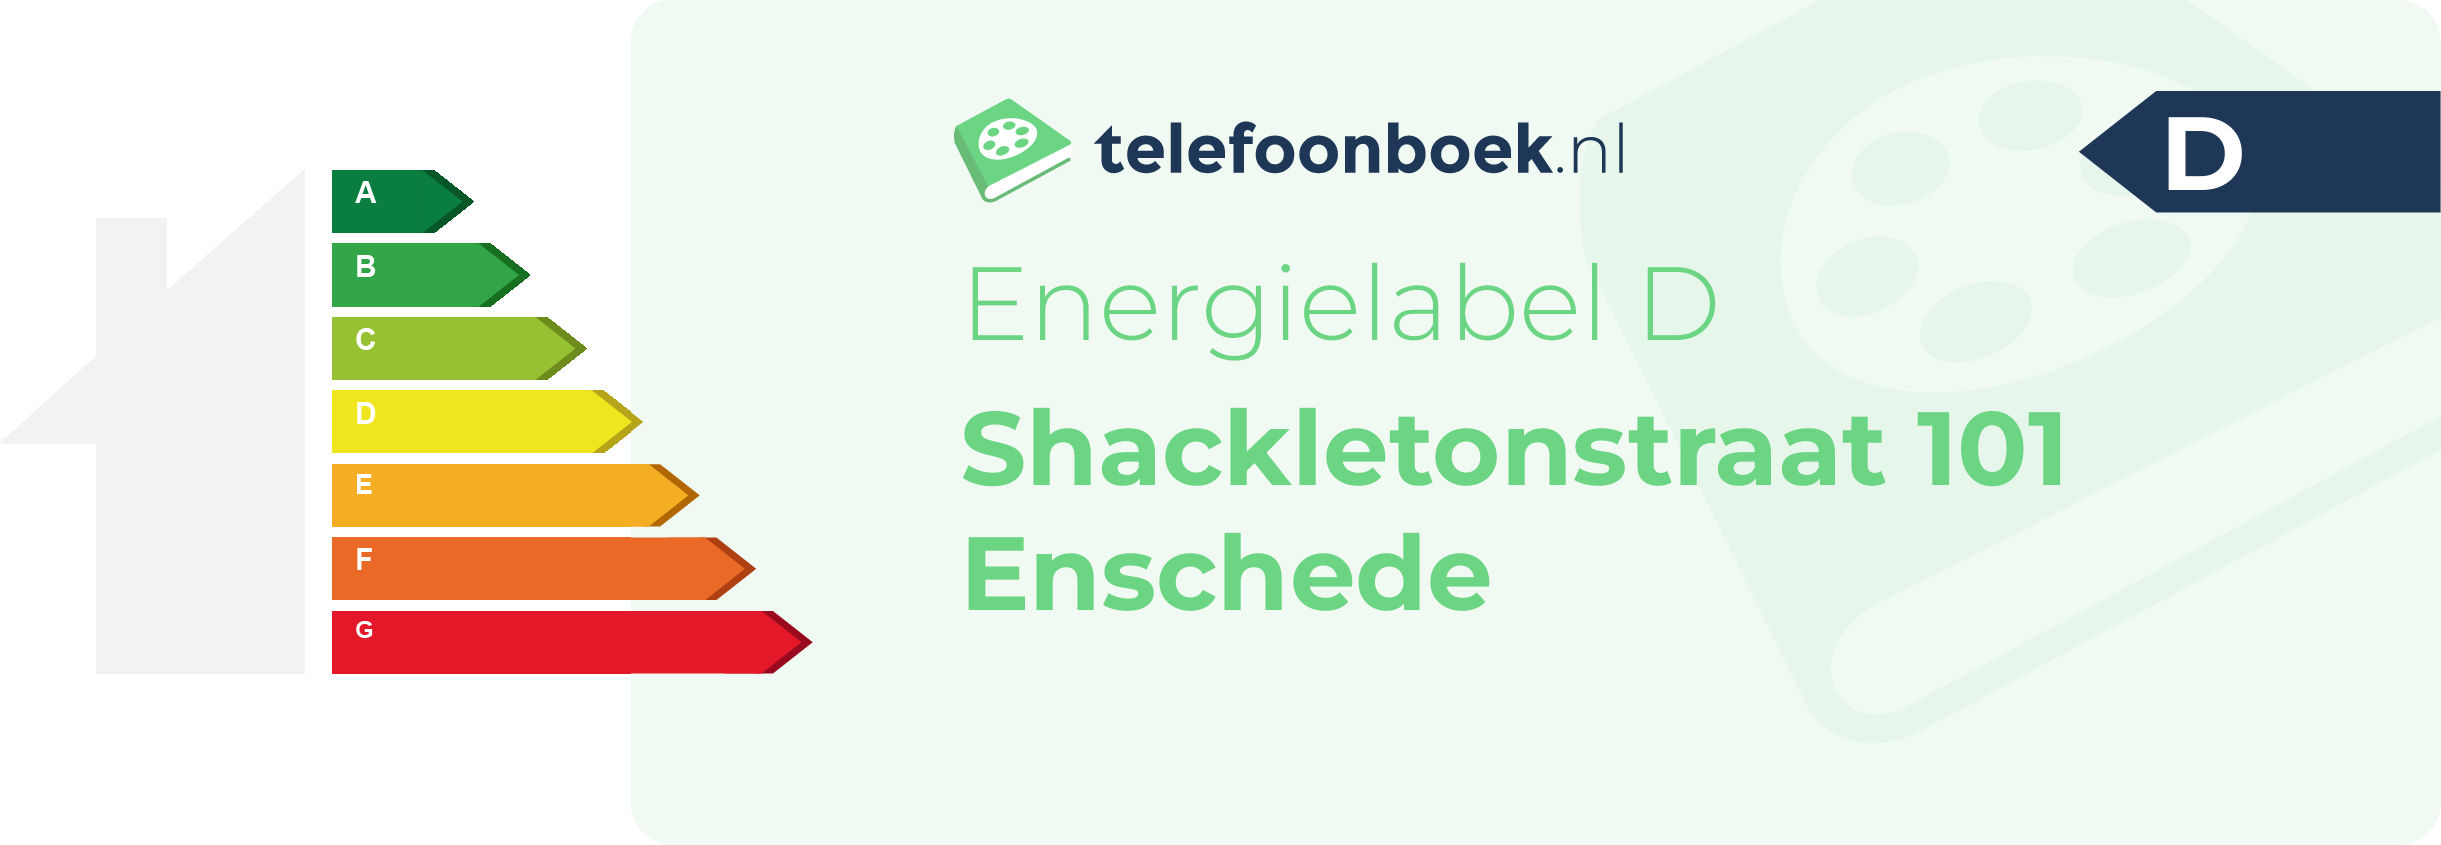 Energielabel Shackletonstraat 101 Enschede